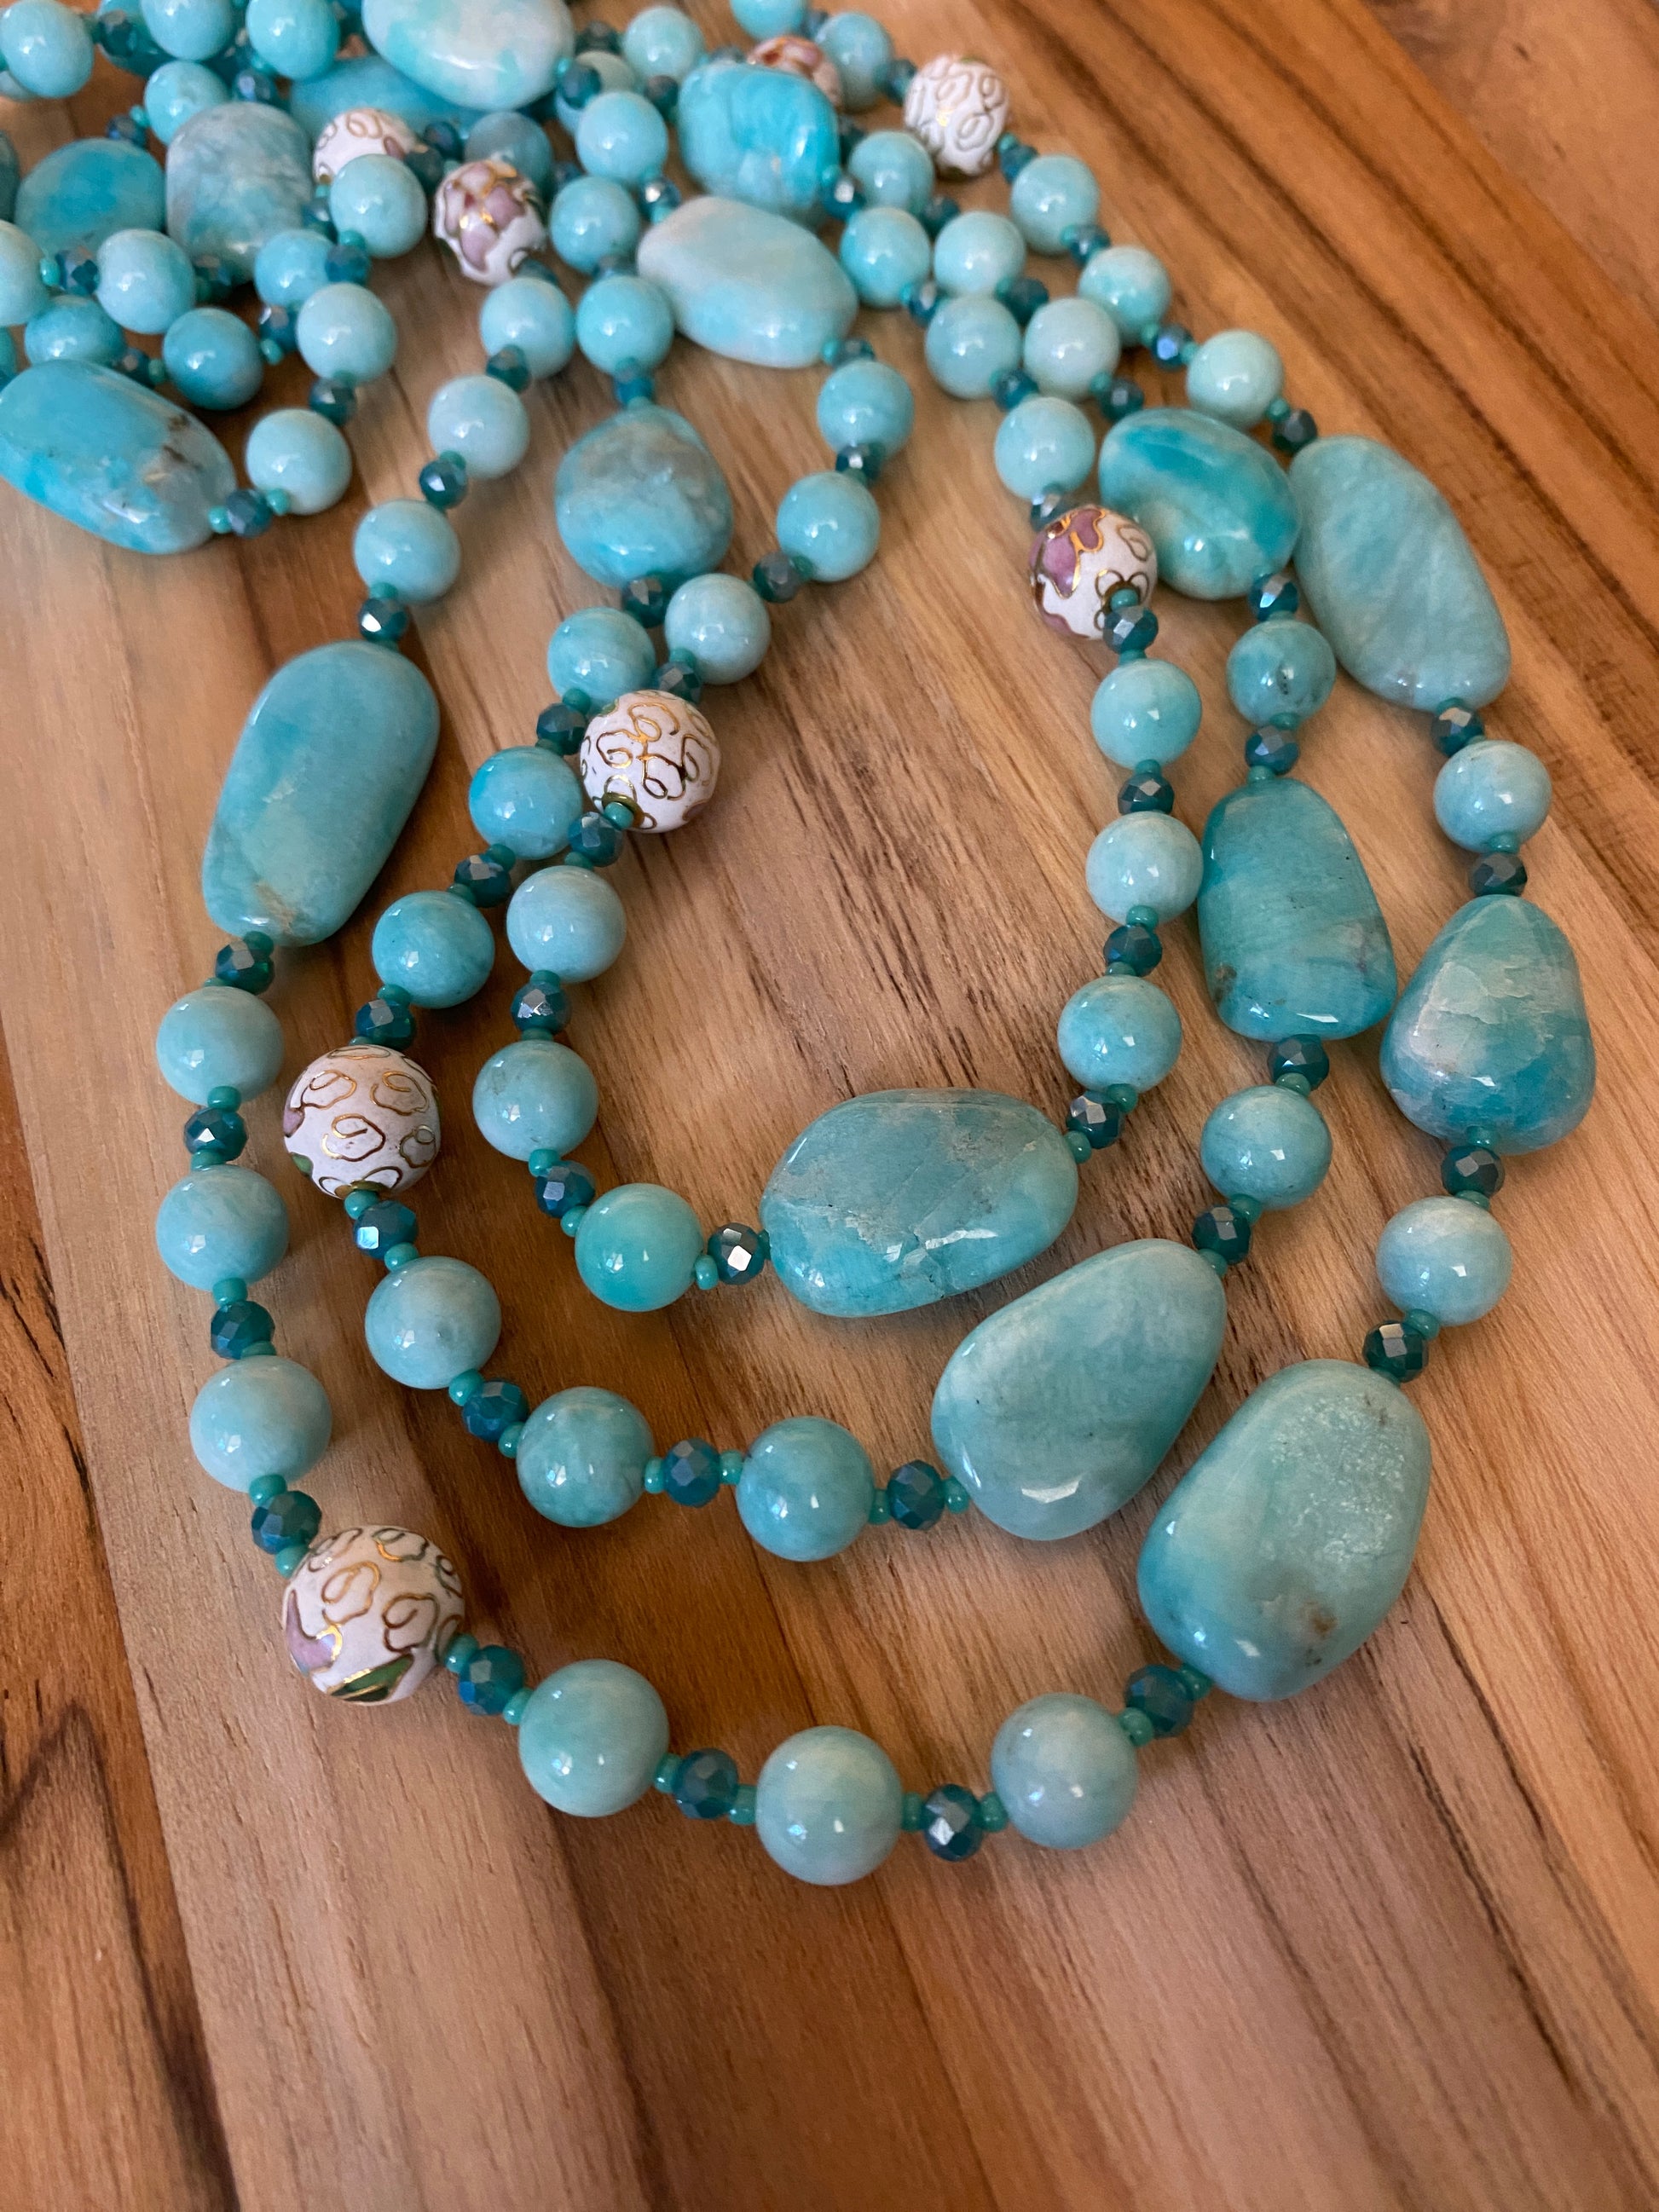 60" Extra Long Aqua Blue Beaded Amazonite Wraparound Necklace with Cloisonne & Crystal Beads My Urban Gems